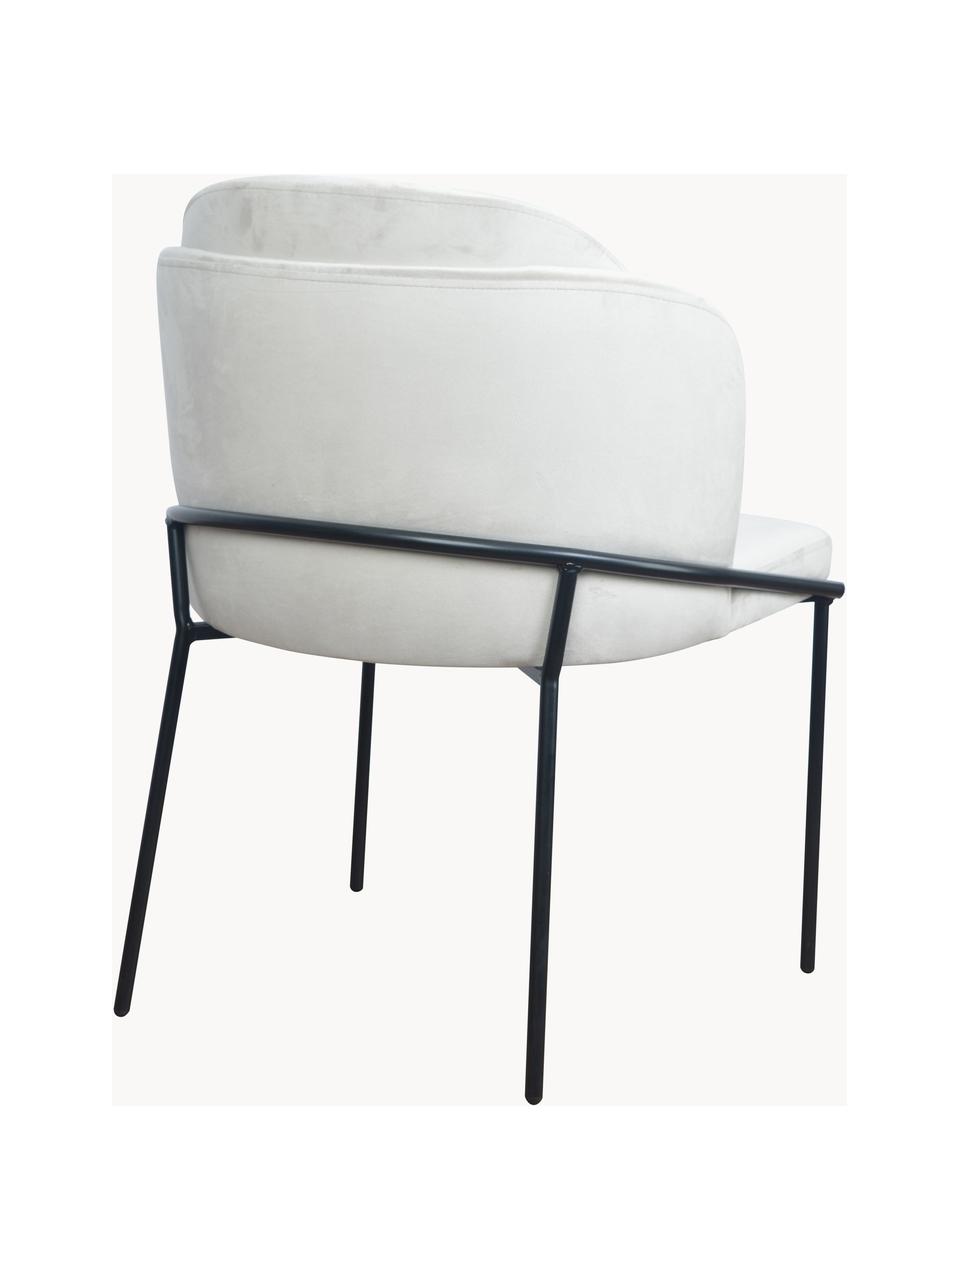 Krzesło tapicerowane z aksamitu Polly, Tapicerka: aksamit (100% poliester), Nogi: metal, Kremowobiały aksamit, S 57 x G 55 cm